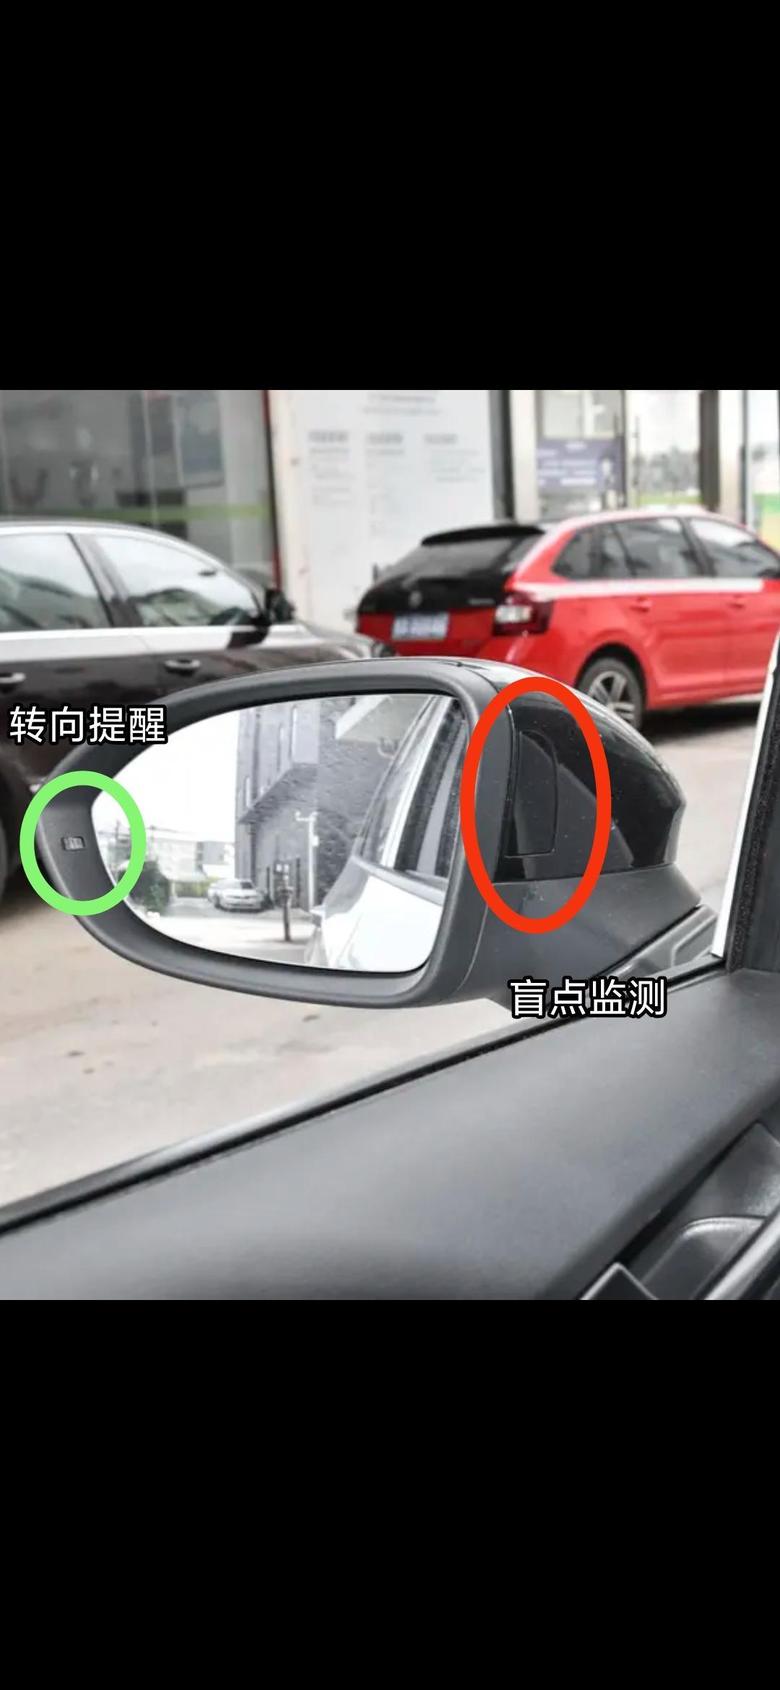 大众id.3哪位纯净版并且花1300选装了智驾的车友到车后麻烦拍张外后视镜的照片看看外后视镜有没有提醒灯也就是有没有弯道辅助功能谢谢图一红圈那个位置